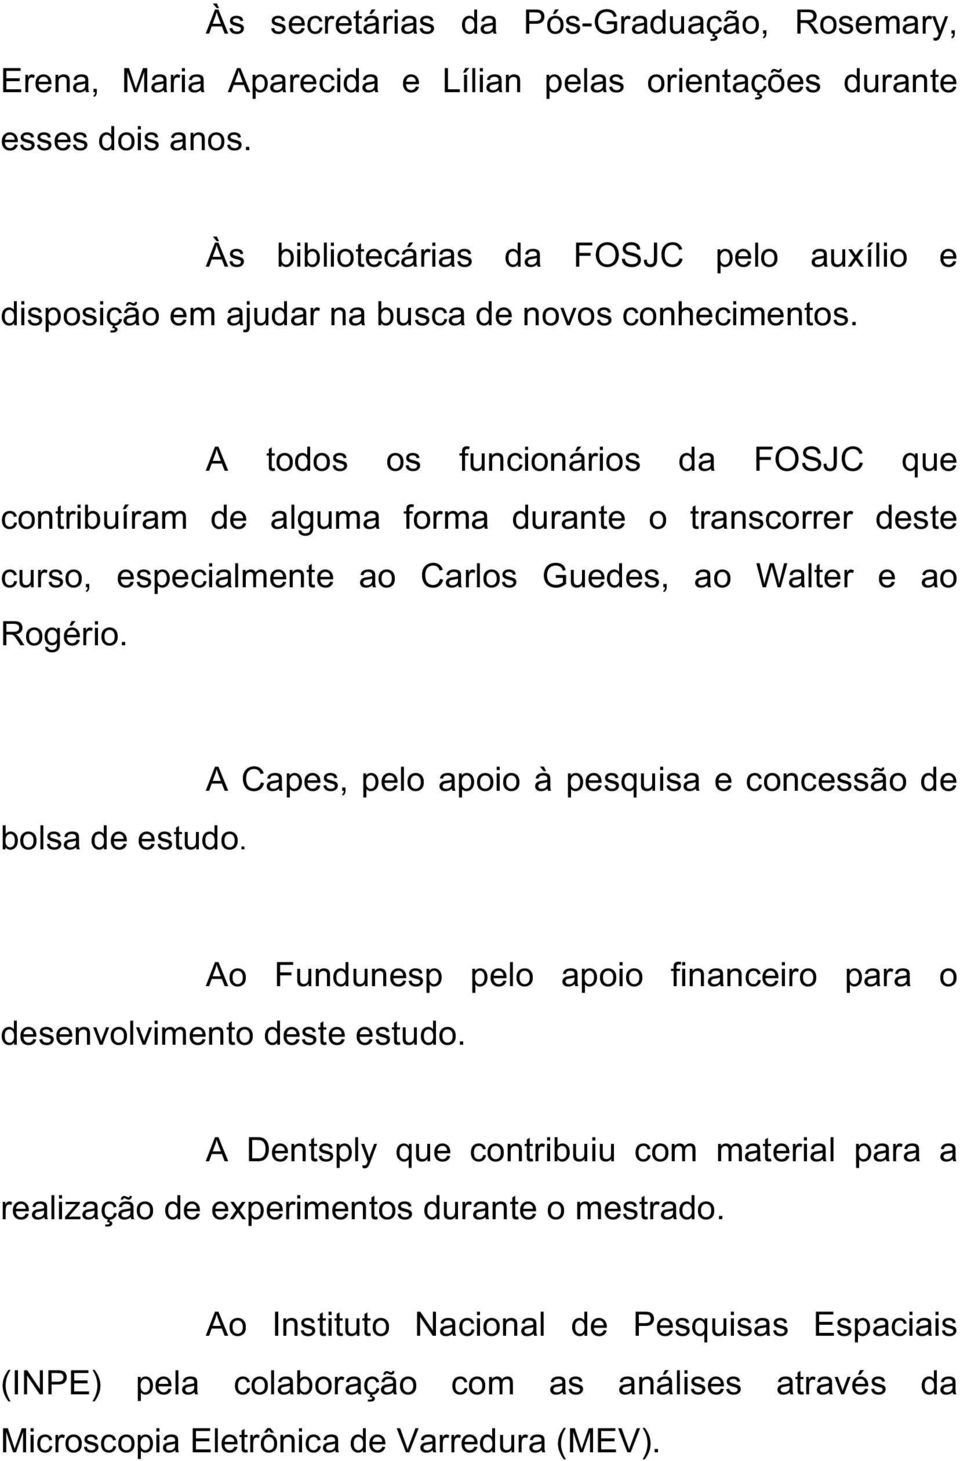 A todos os funcionários da FOSJC que contribuíram de alguma forma durante o transcorrer deste curso, especialmente ao Carlos Guedes, ao Walter e ao Rogério. bolsa de estudo.